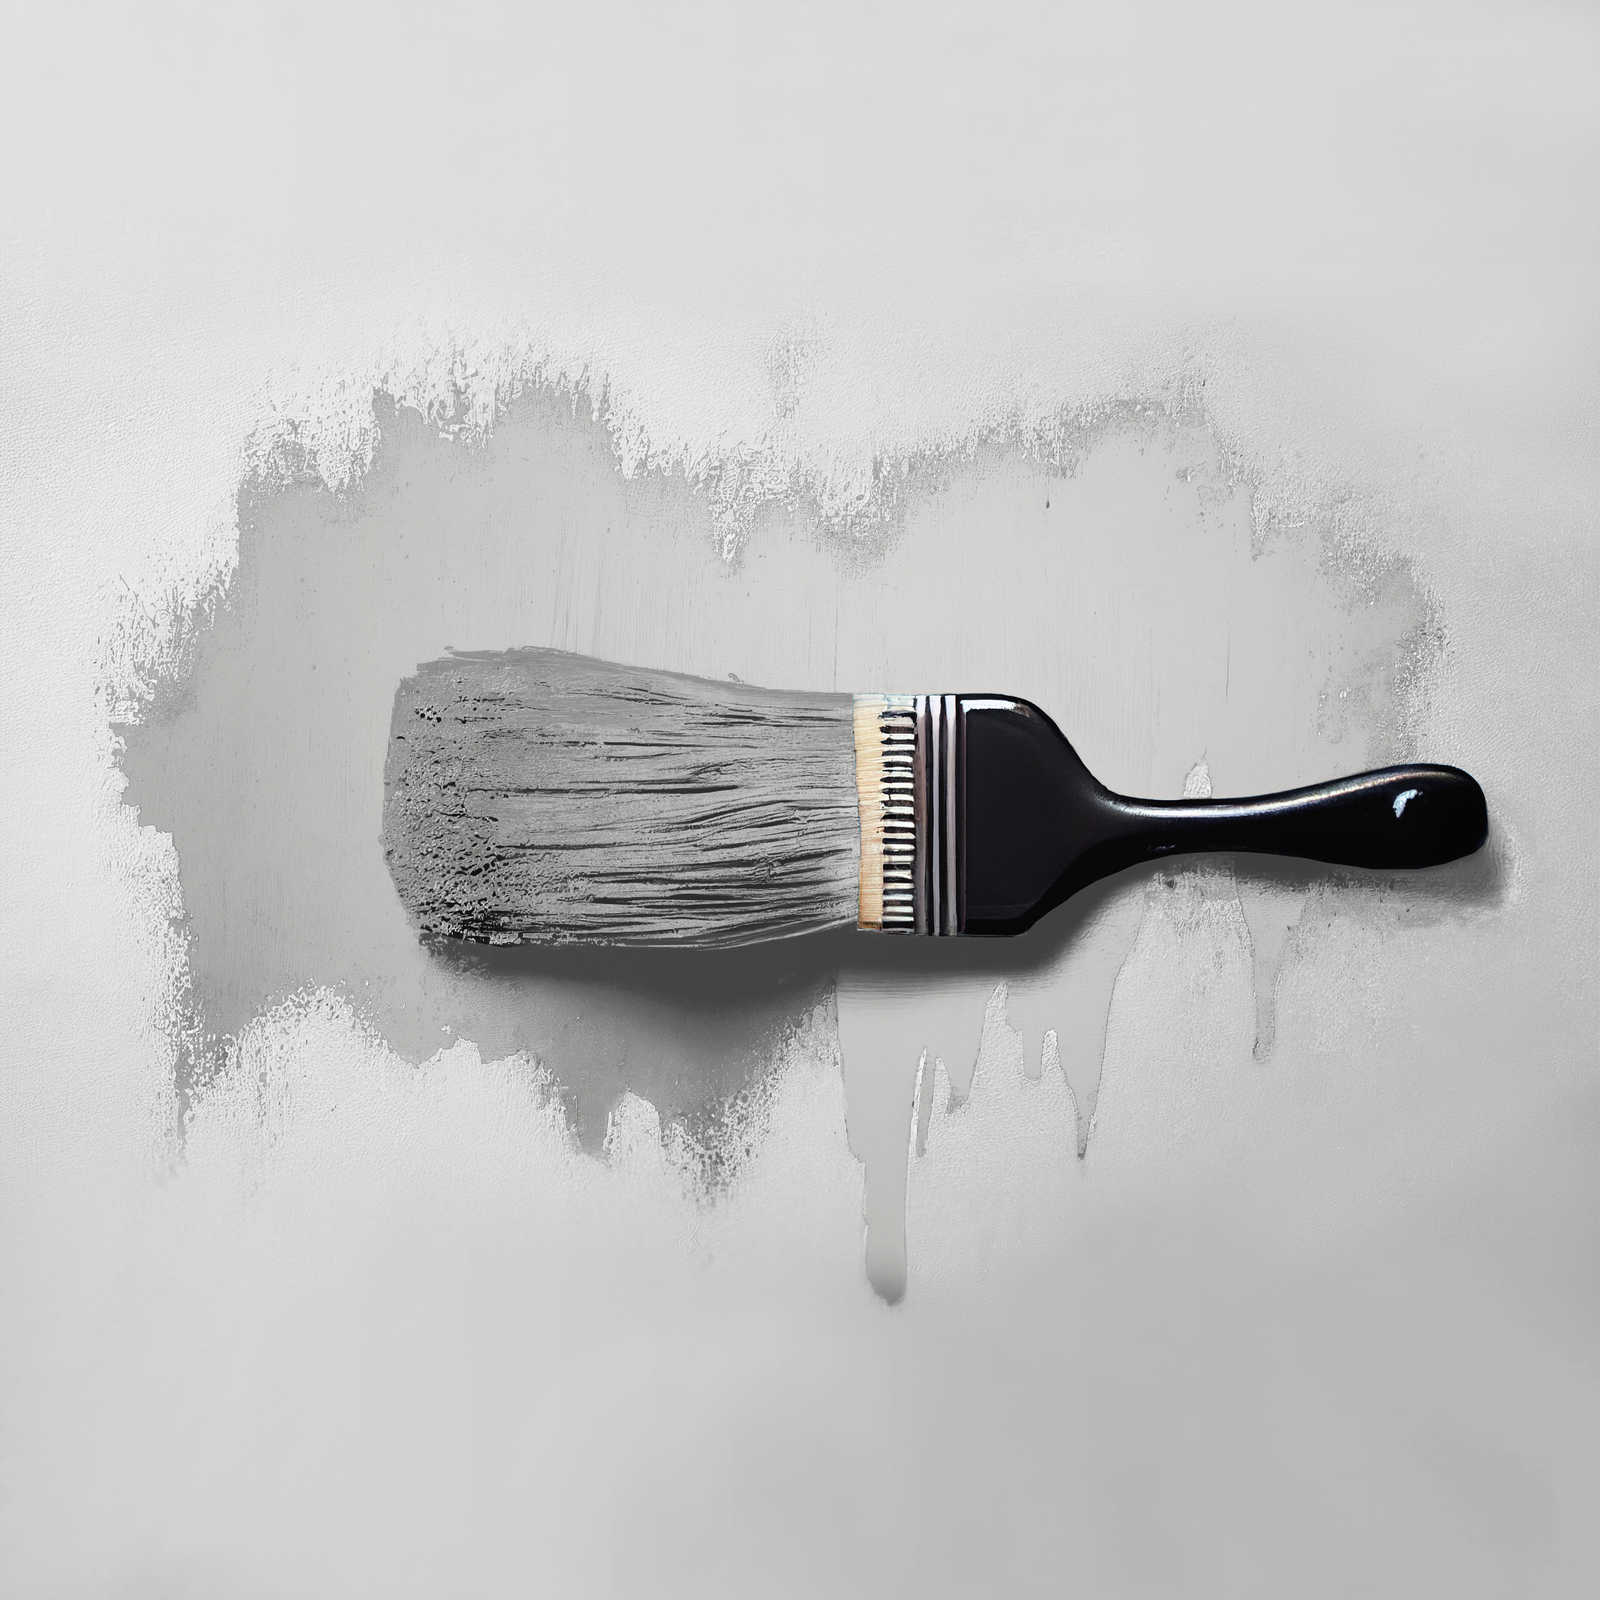             Pintura mural TCK1009 »Sprat Fish« en gris plata liso – 2,5 litro
        